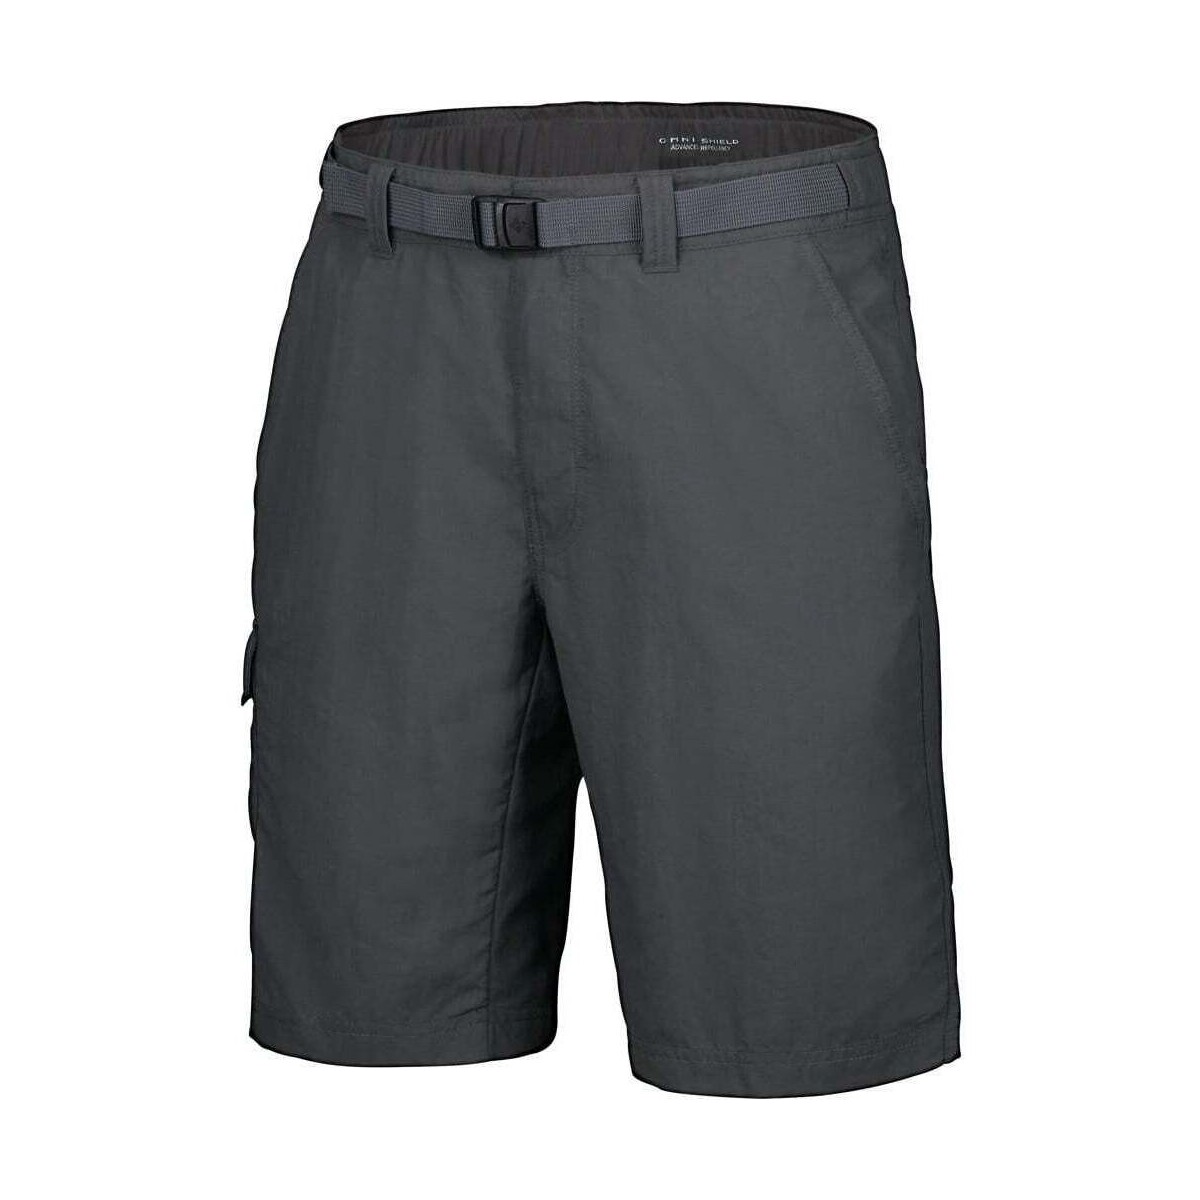 Vêtements Homme Pantalons de survêtement Columbia _3_Cascades Explorer Short Gris